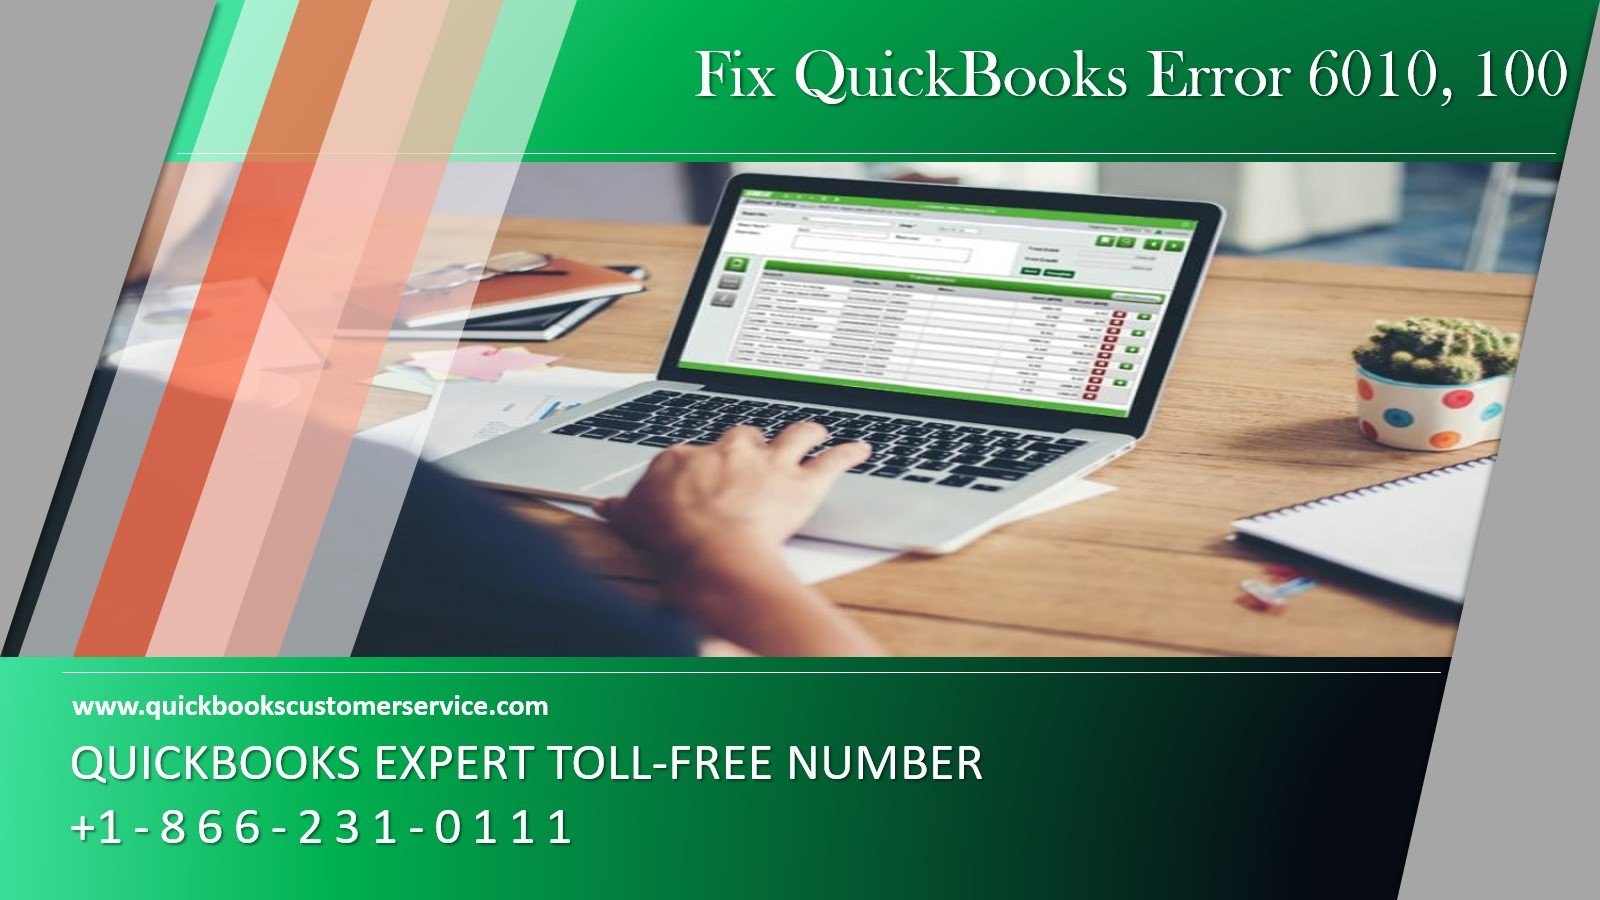 How to Troubleshoot QuickBooks Error 6010, 100?